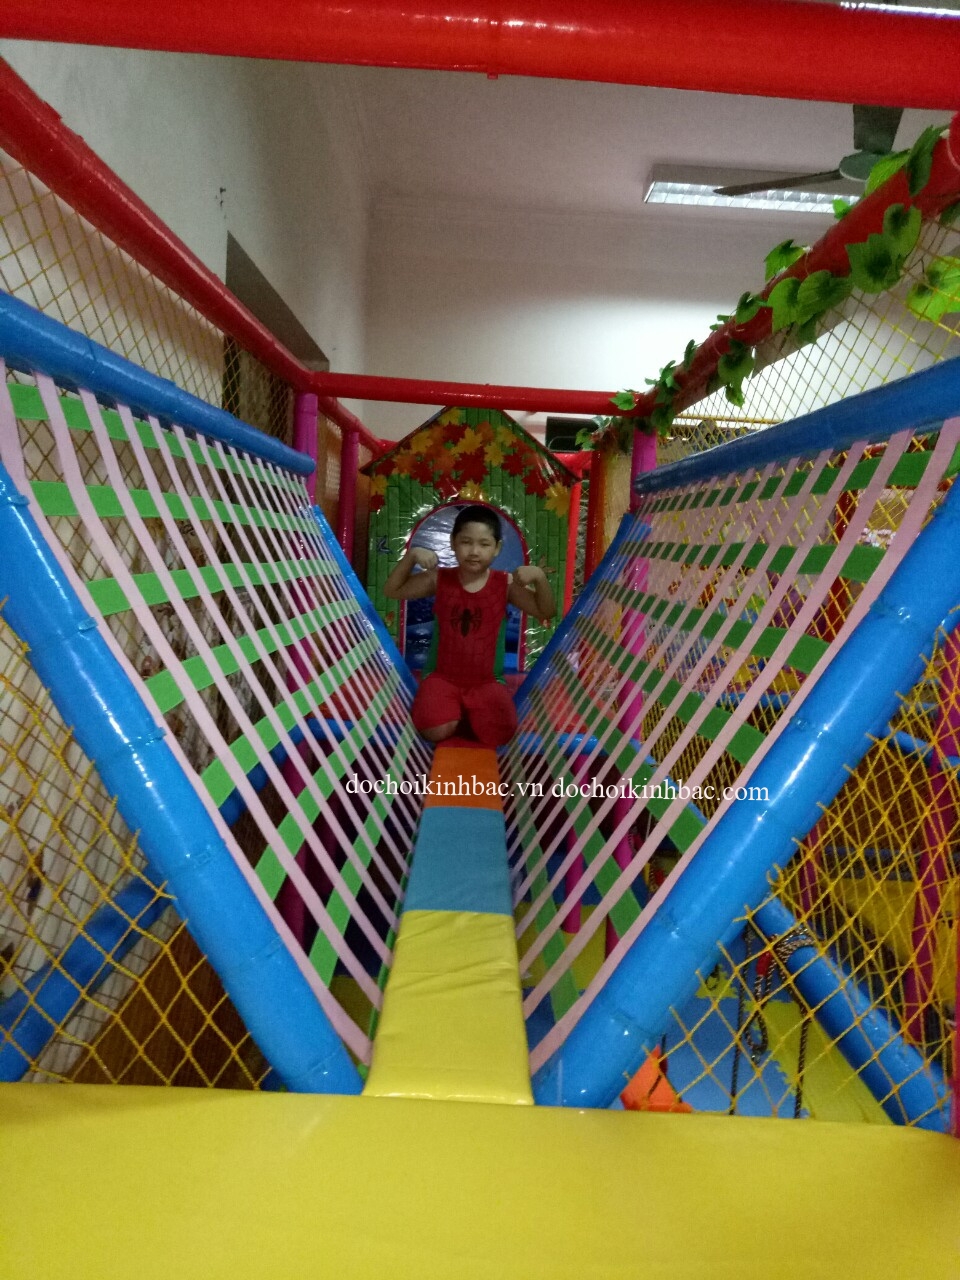 Đồ chơi Kinh Bắc cung cấp phụ kiện khu vui chơi liên hoàn tại Đại Bản, An Dương, Hải Phòng